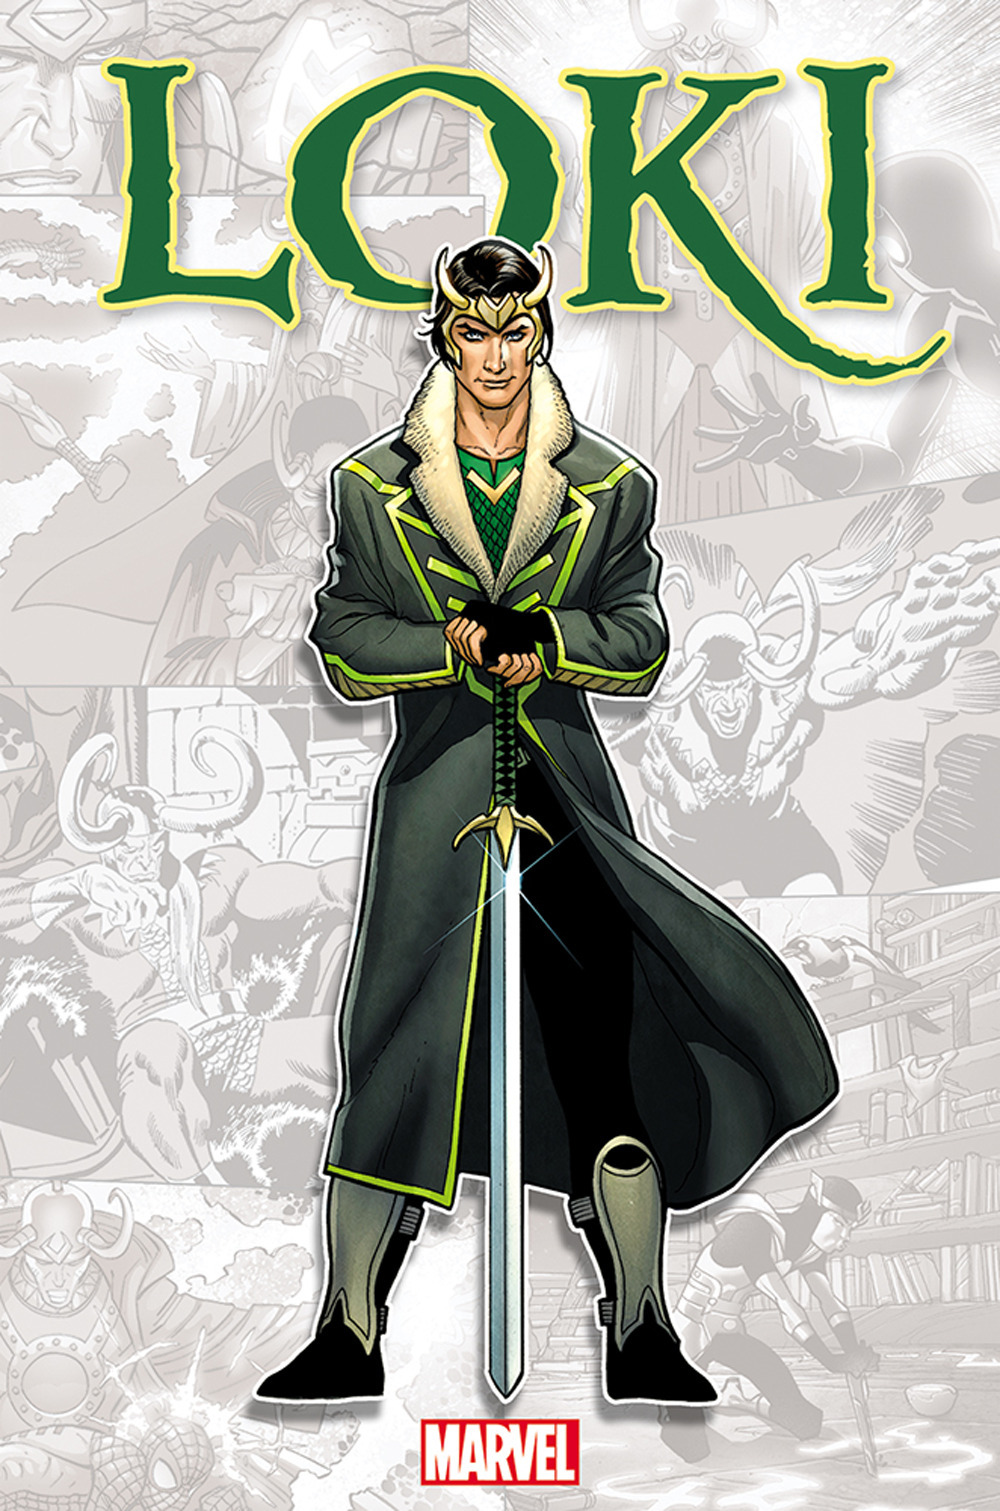 Loki. Marvel-verse